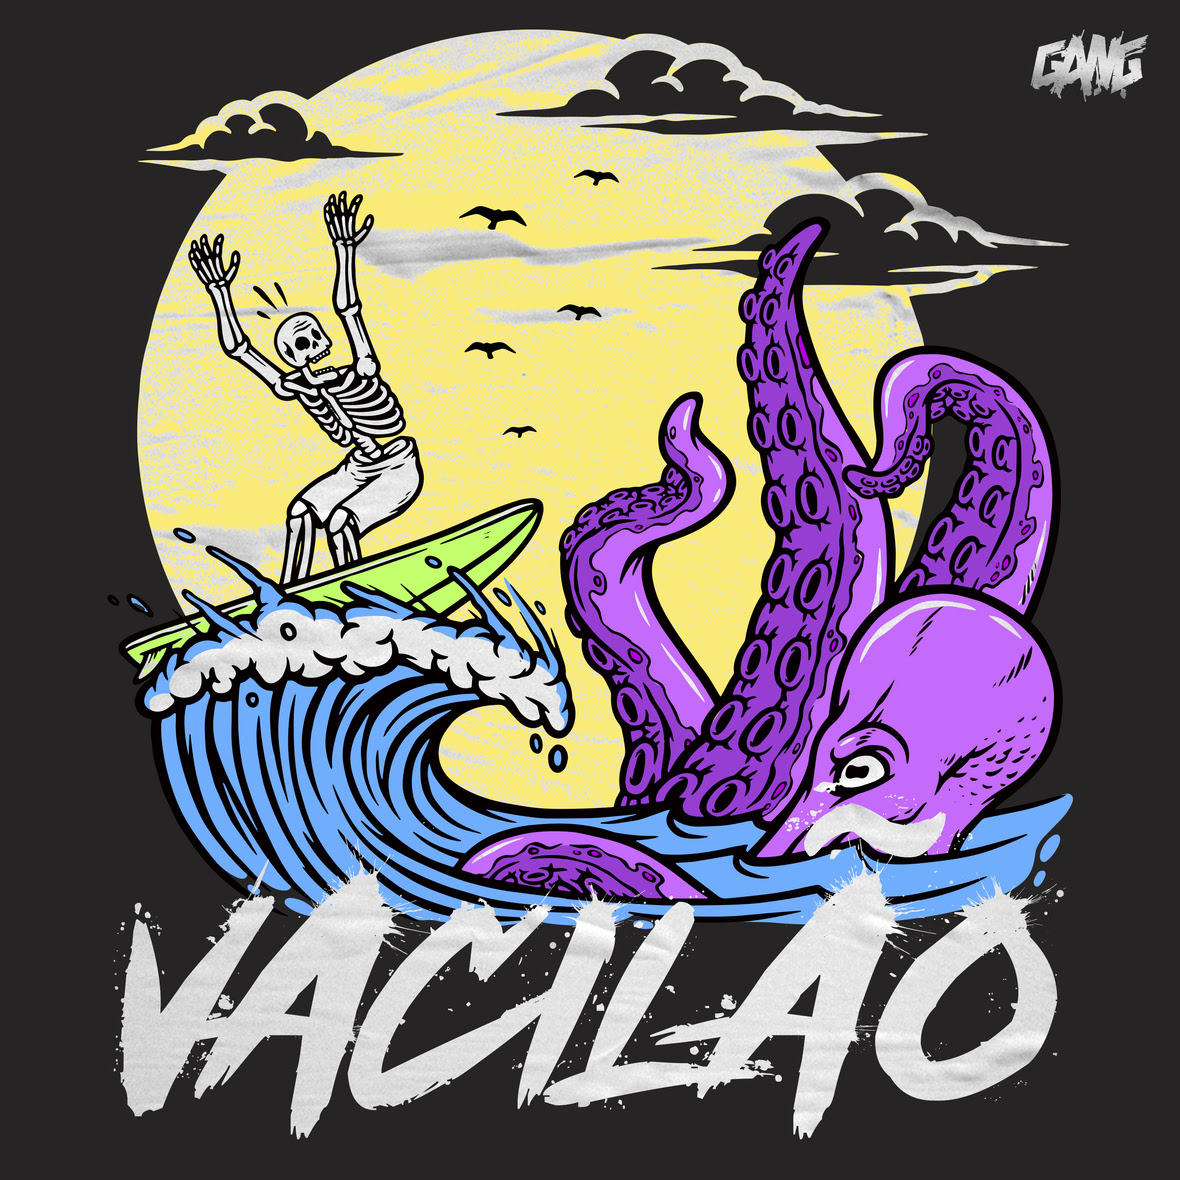 La Gang mostra ska punk dançante no novo single 'Vacilão'